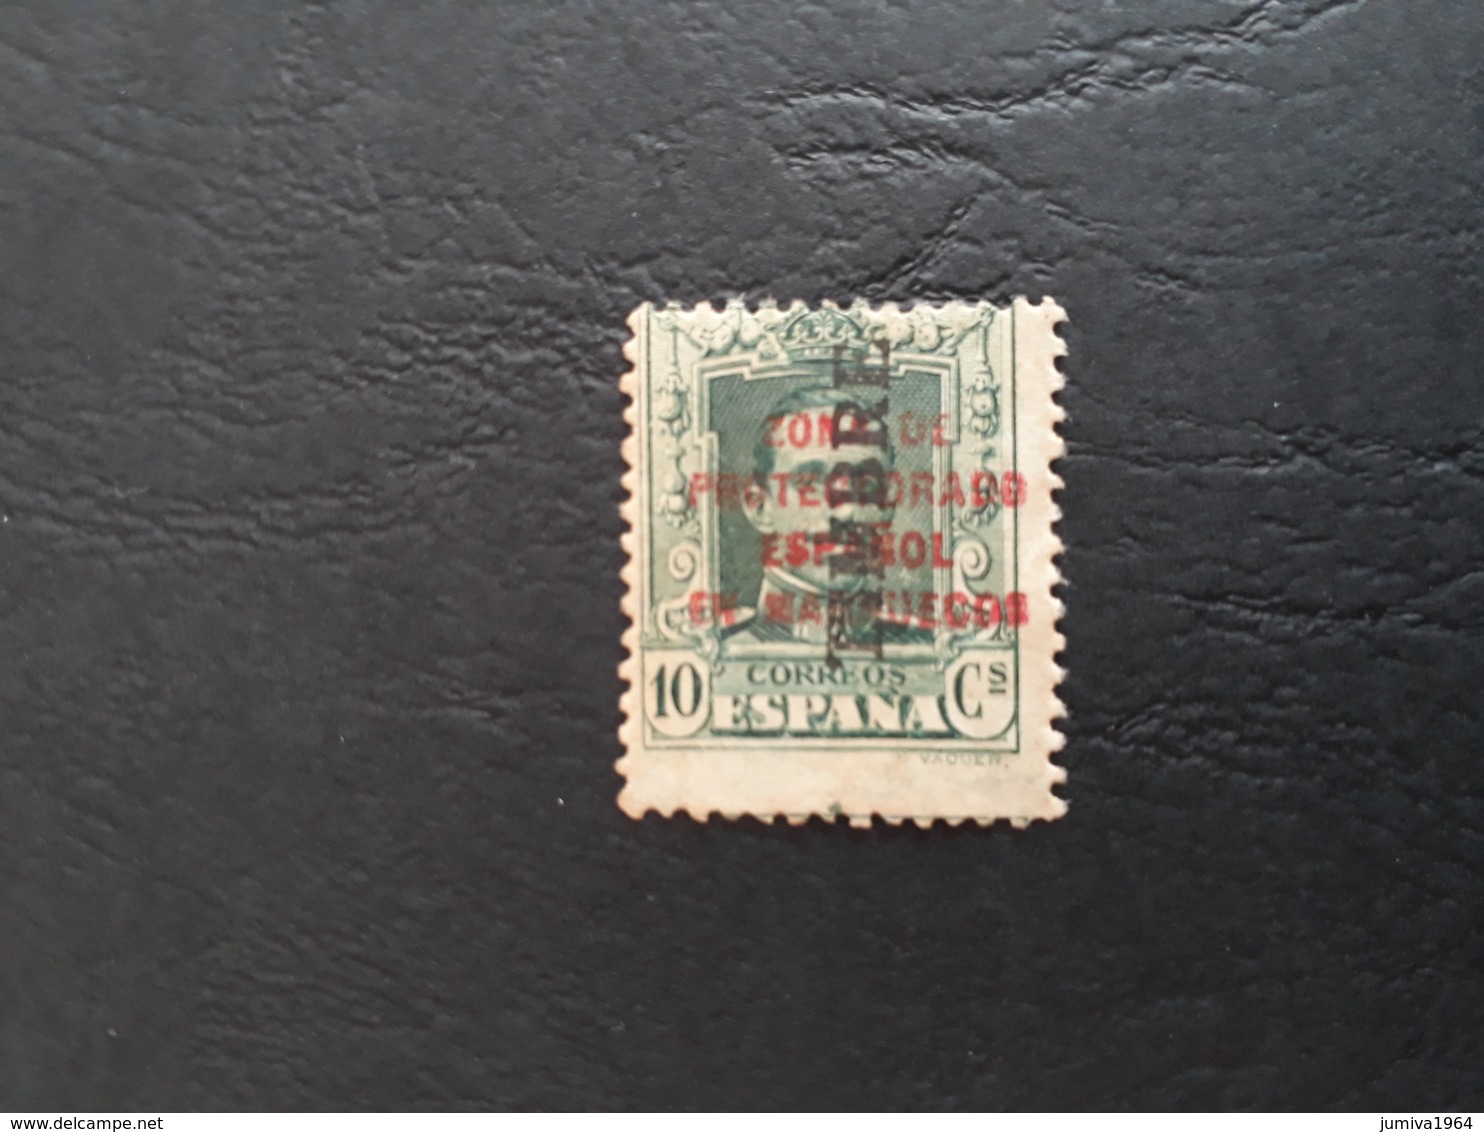 Maroc Espagnol - Marruecos - 1930 - Sello N° 83 Habilitado "TIMBRE" Para Servir Como Tasa (taxe) - Muy RARO - Maroc Espagnol